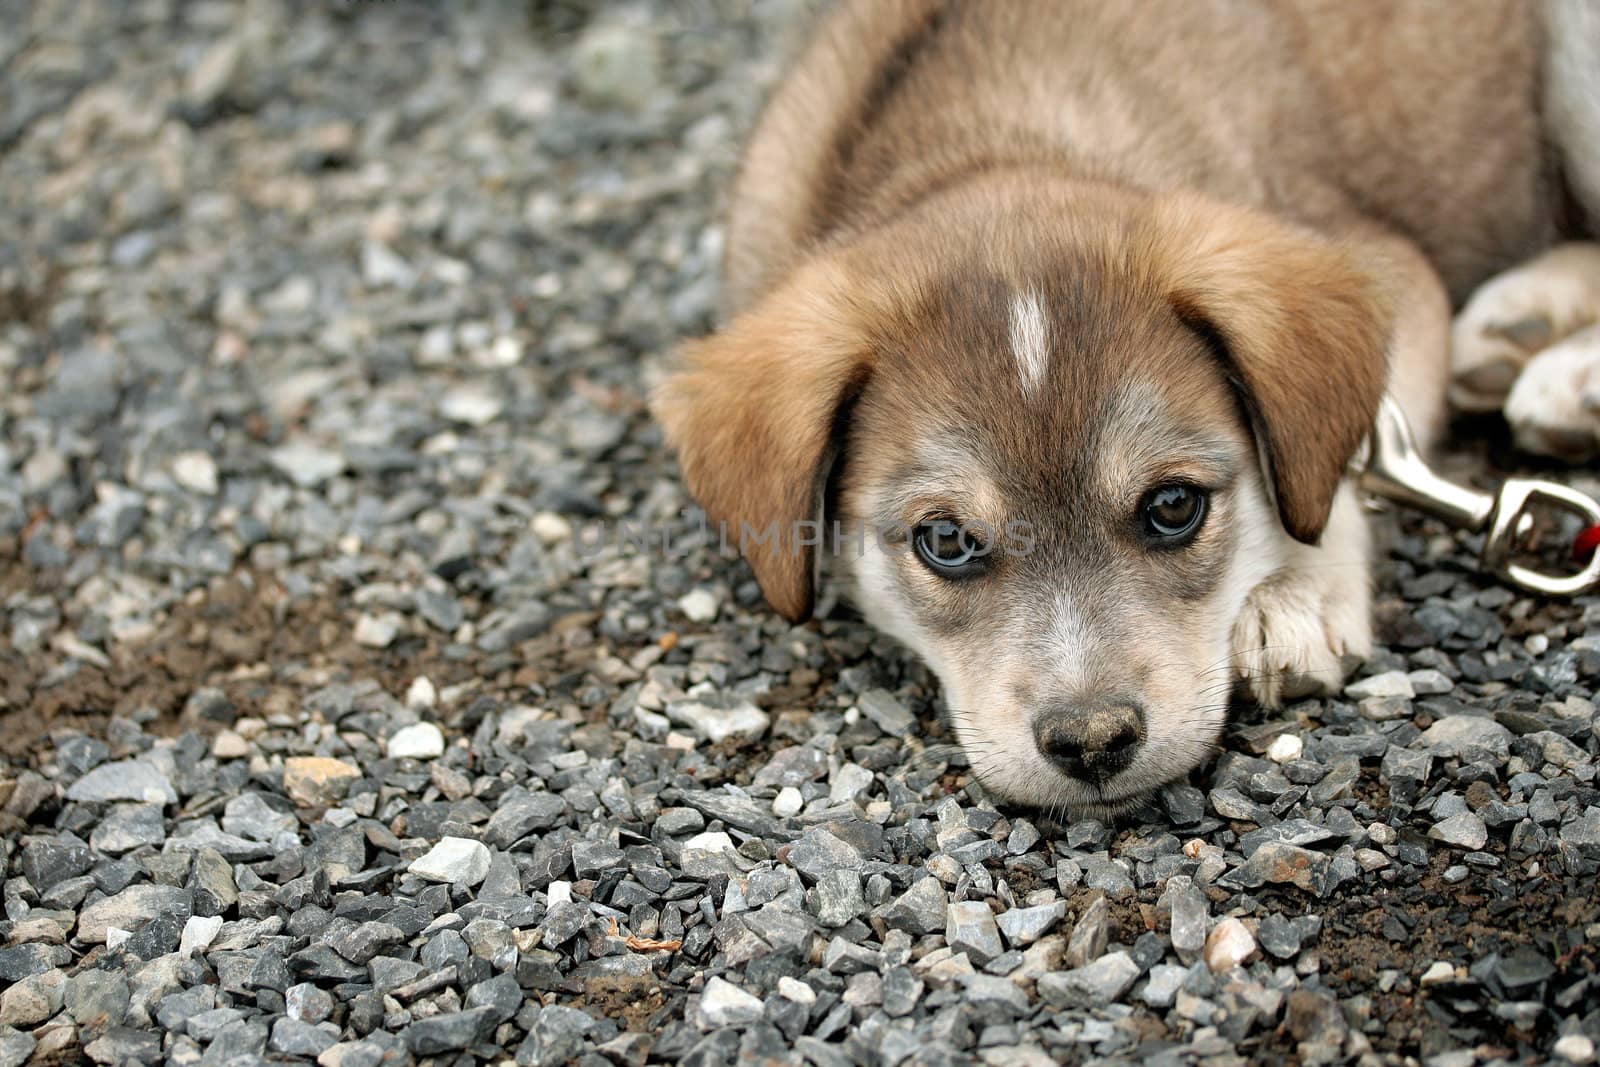 Sad puppy by Hbak